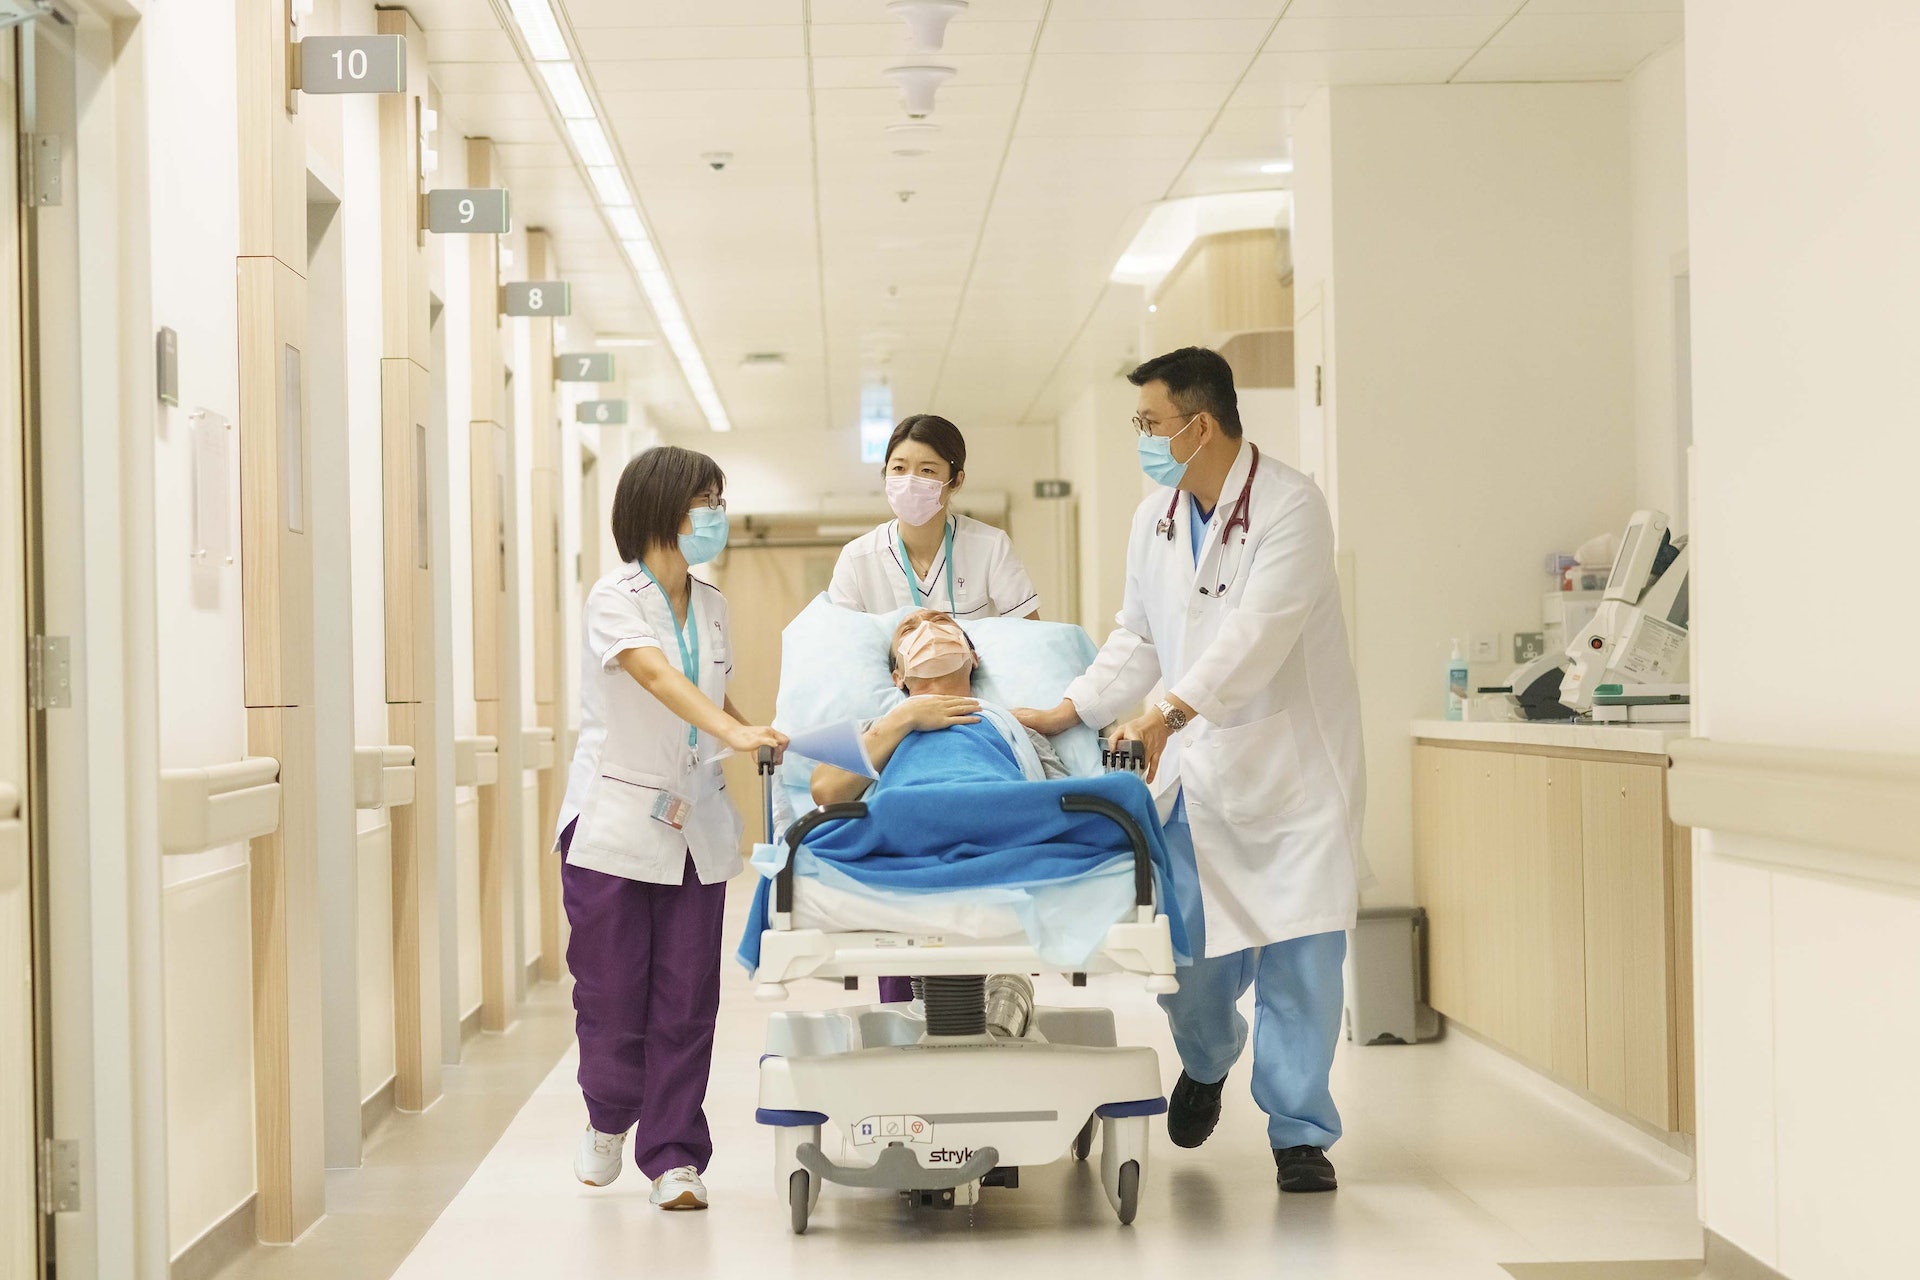 公營醫院急症室常常處於「爆煲」狀態，中大醫院的急症醫學中心有助紓緩整體醫療負擔，為病人提供適切急症治療。